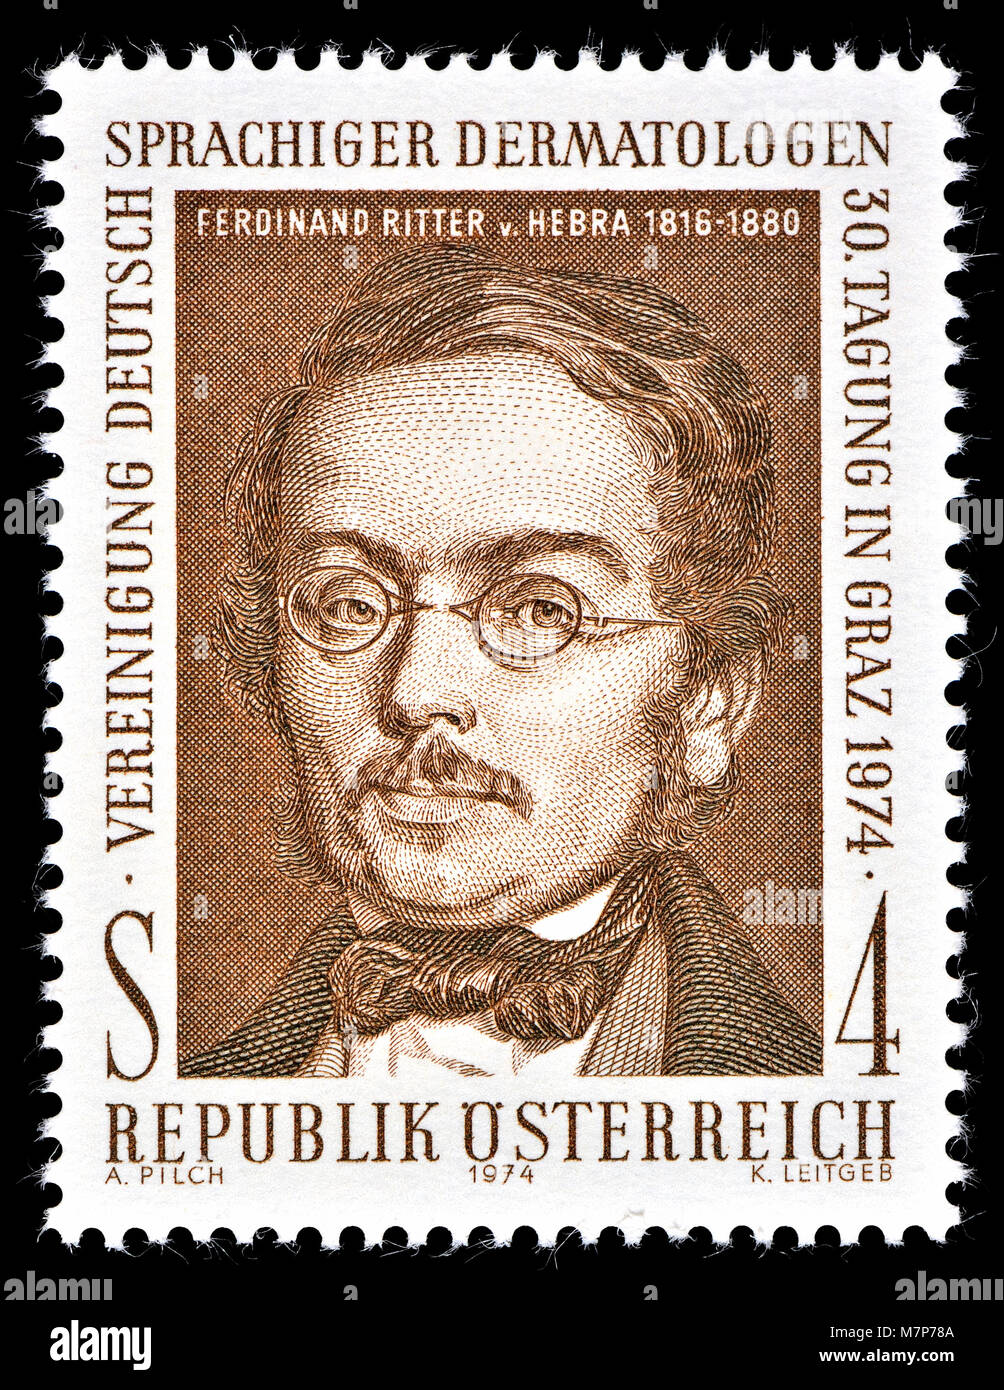 Österreichische Briefmarke (1974): Ferdinand Karl Franz Schwarzmann, Ritter von hebra (1816-1880), mährischer geborenen österreichischen Arzt und Dermatologe... Stockfoto